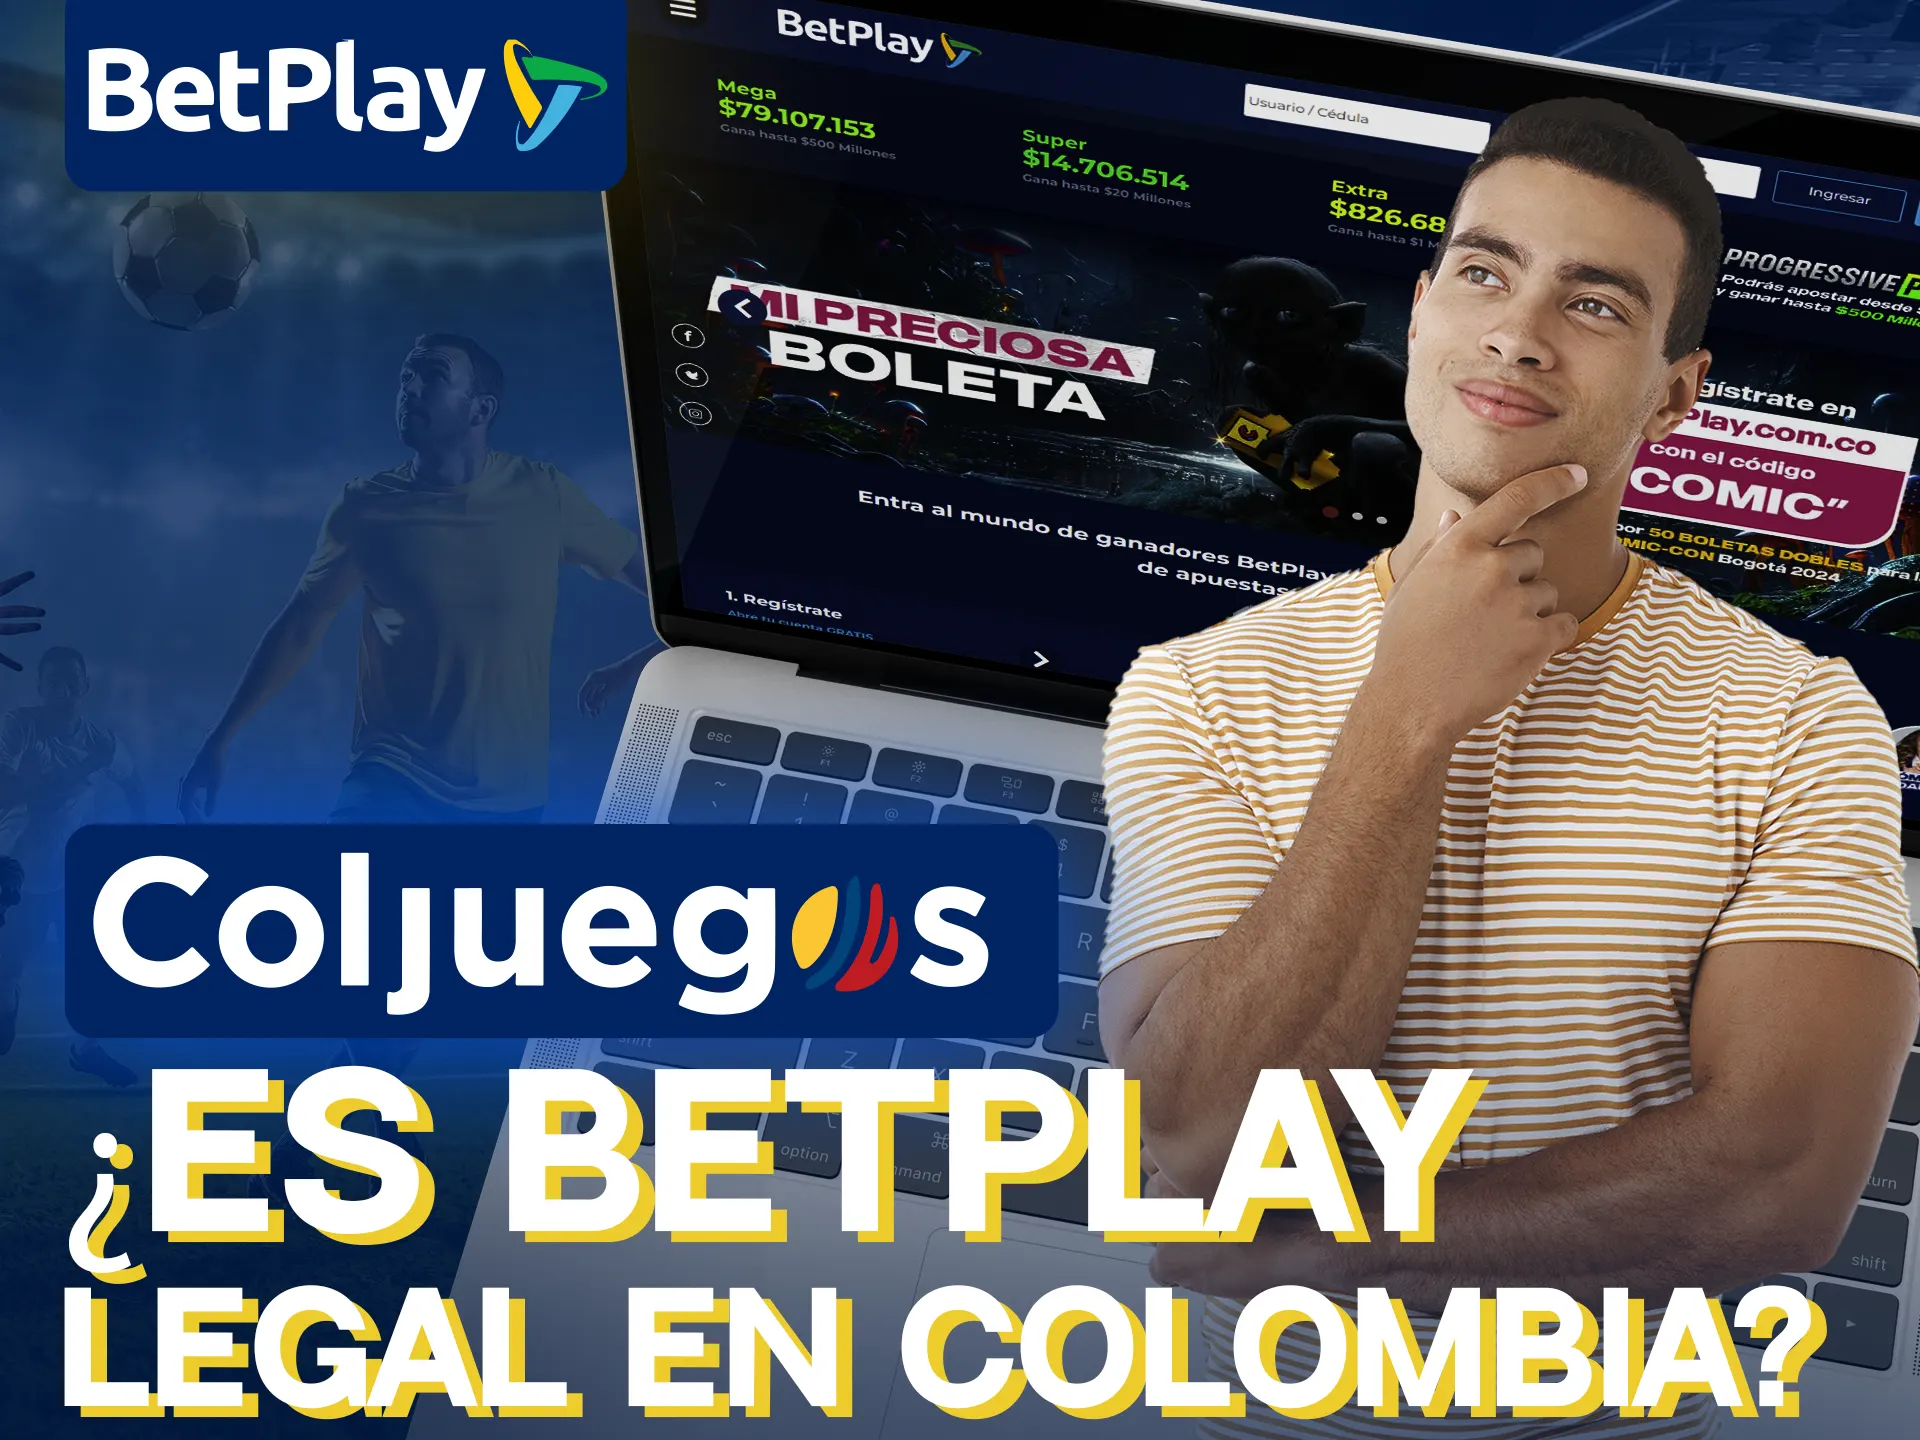 BetPlay es legal y seguro en Colombia.